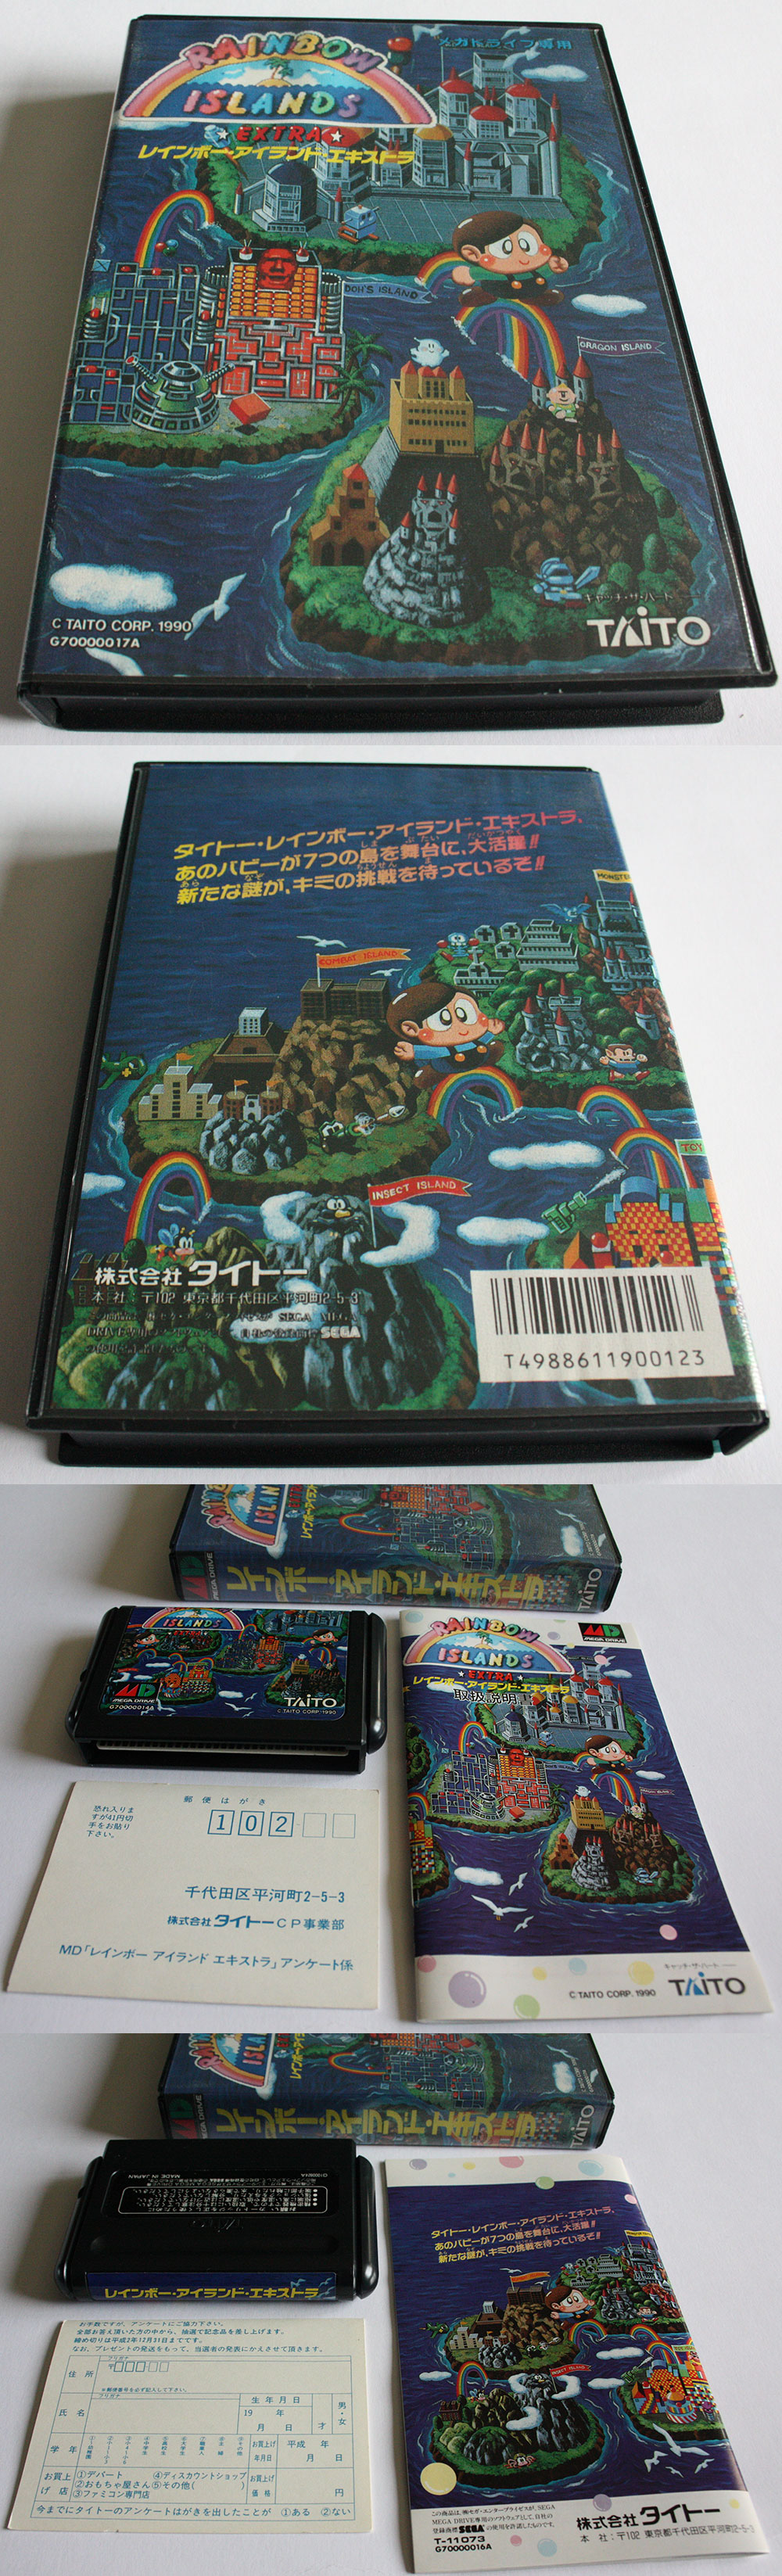 Rainbow Islands Extra (New) from Taito Mega Drive